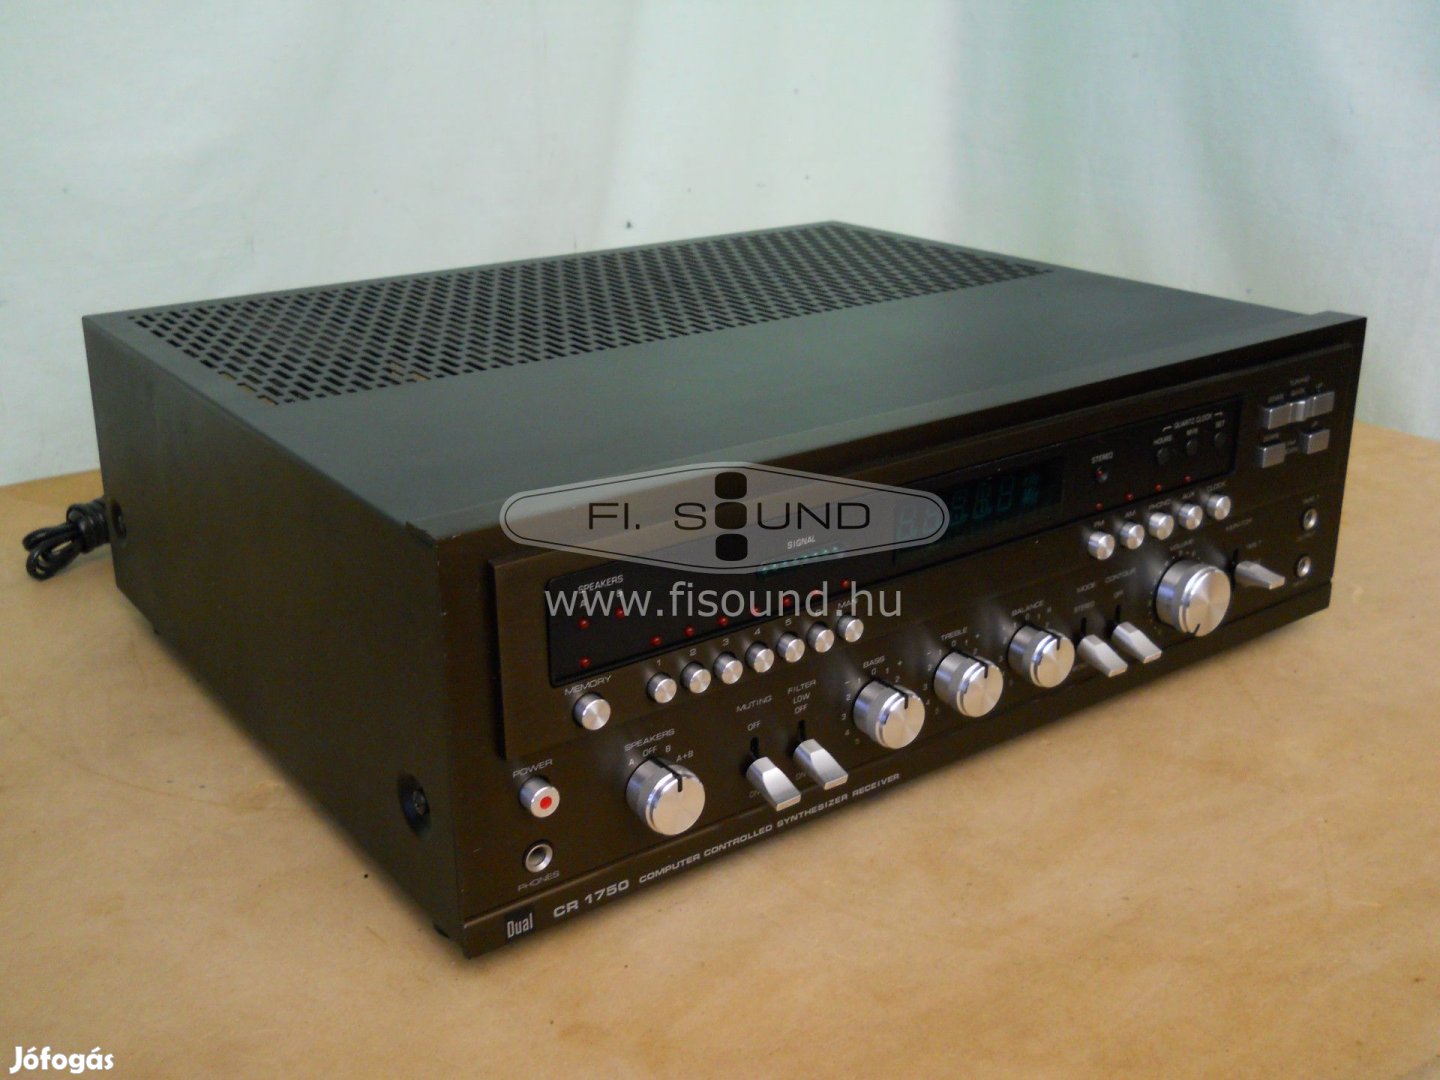 Dual CR-1750 ,2x100W,4-16 ohm,4 hangfalas rádiós sztereo receiver